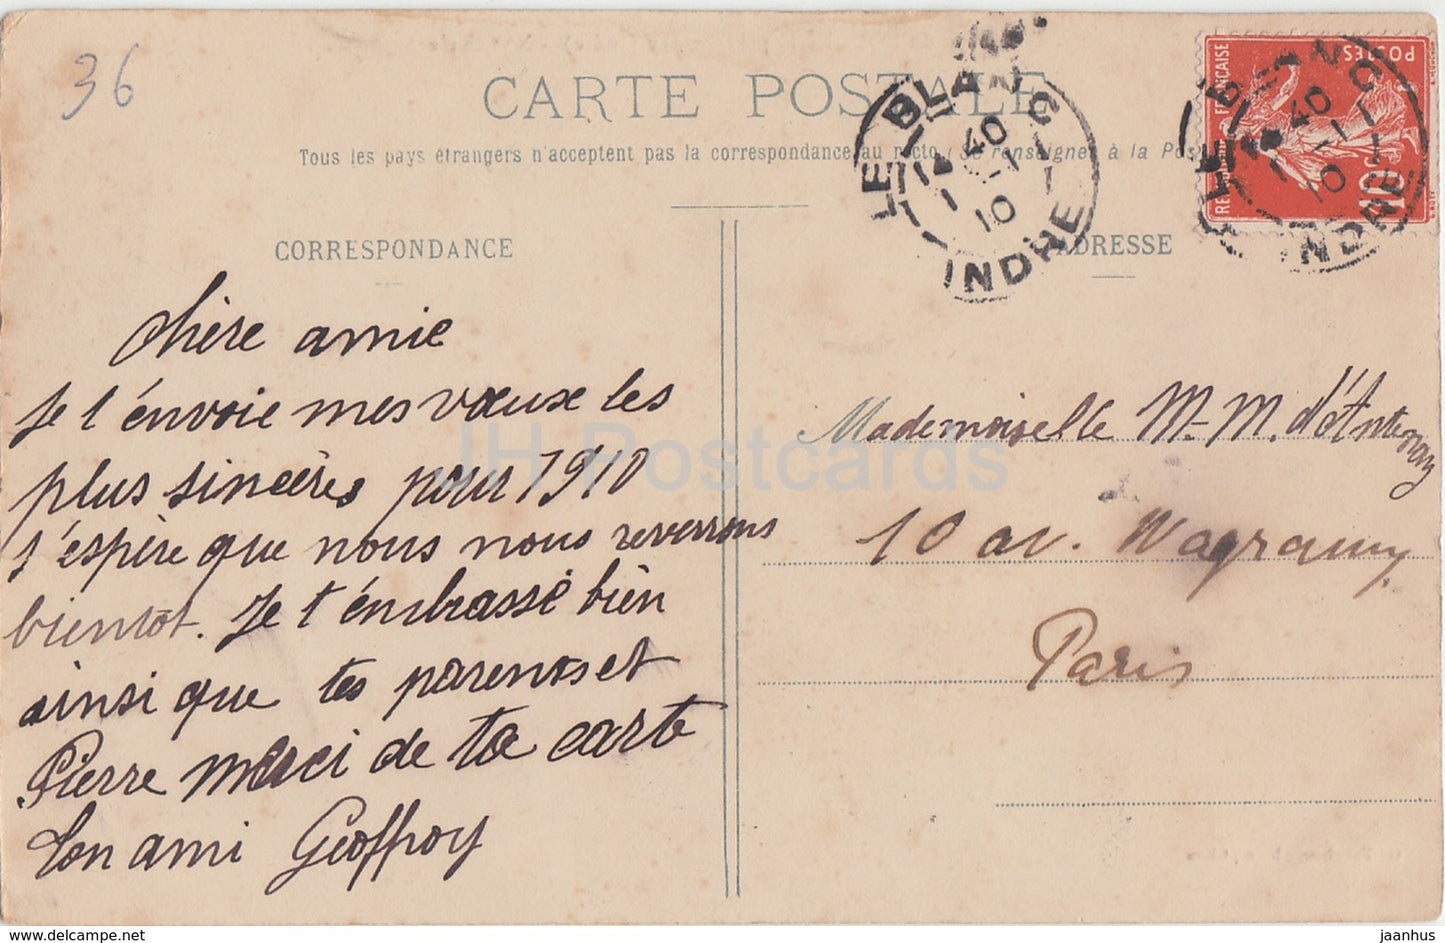 Château du Bouchet - près Rosnay - château - 3282 - 1910 - carte postale ancienne - France - utilisé